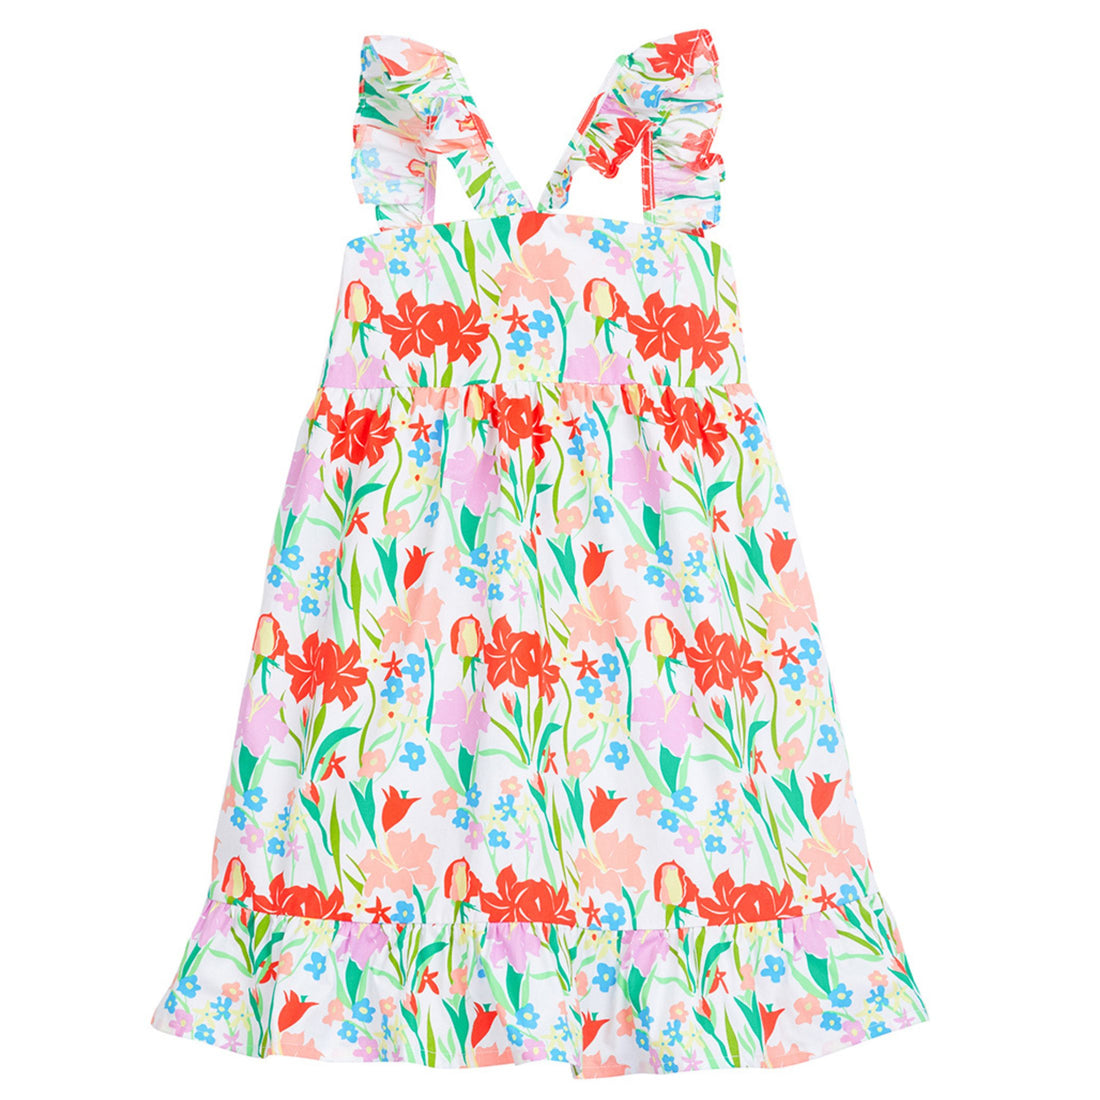 Soho Dress - Summer Gladiolus